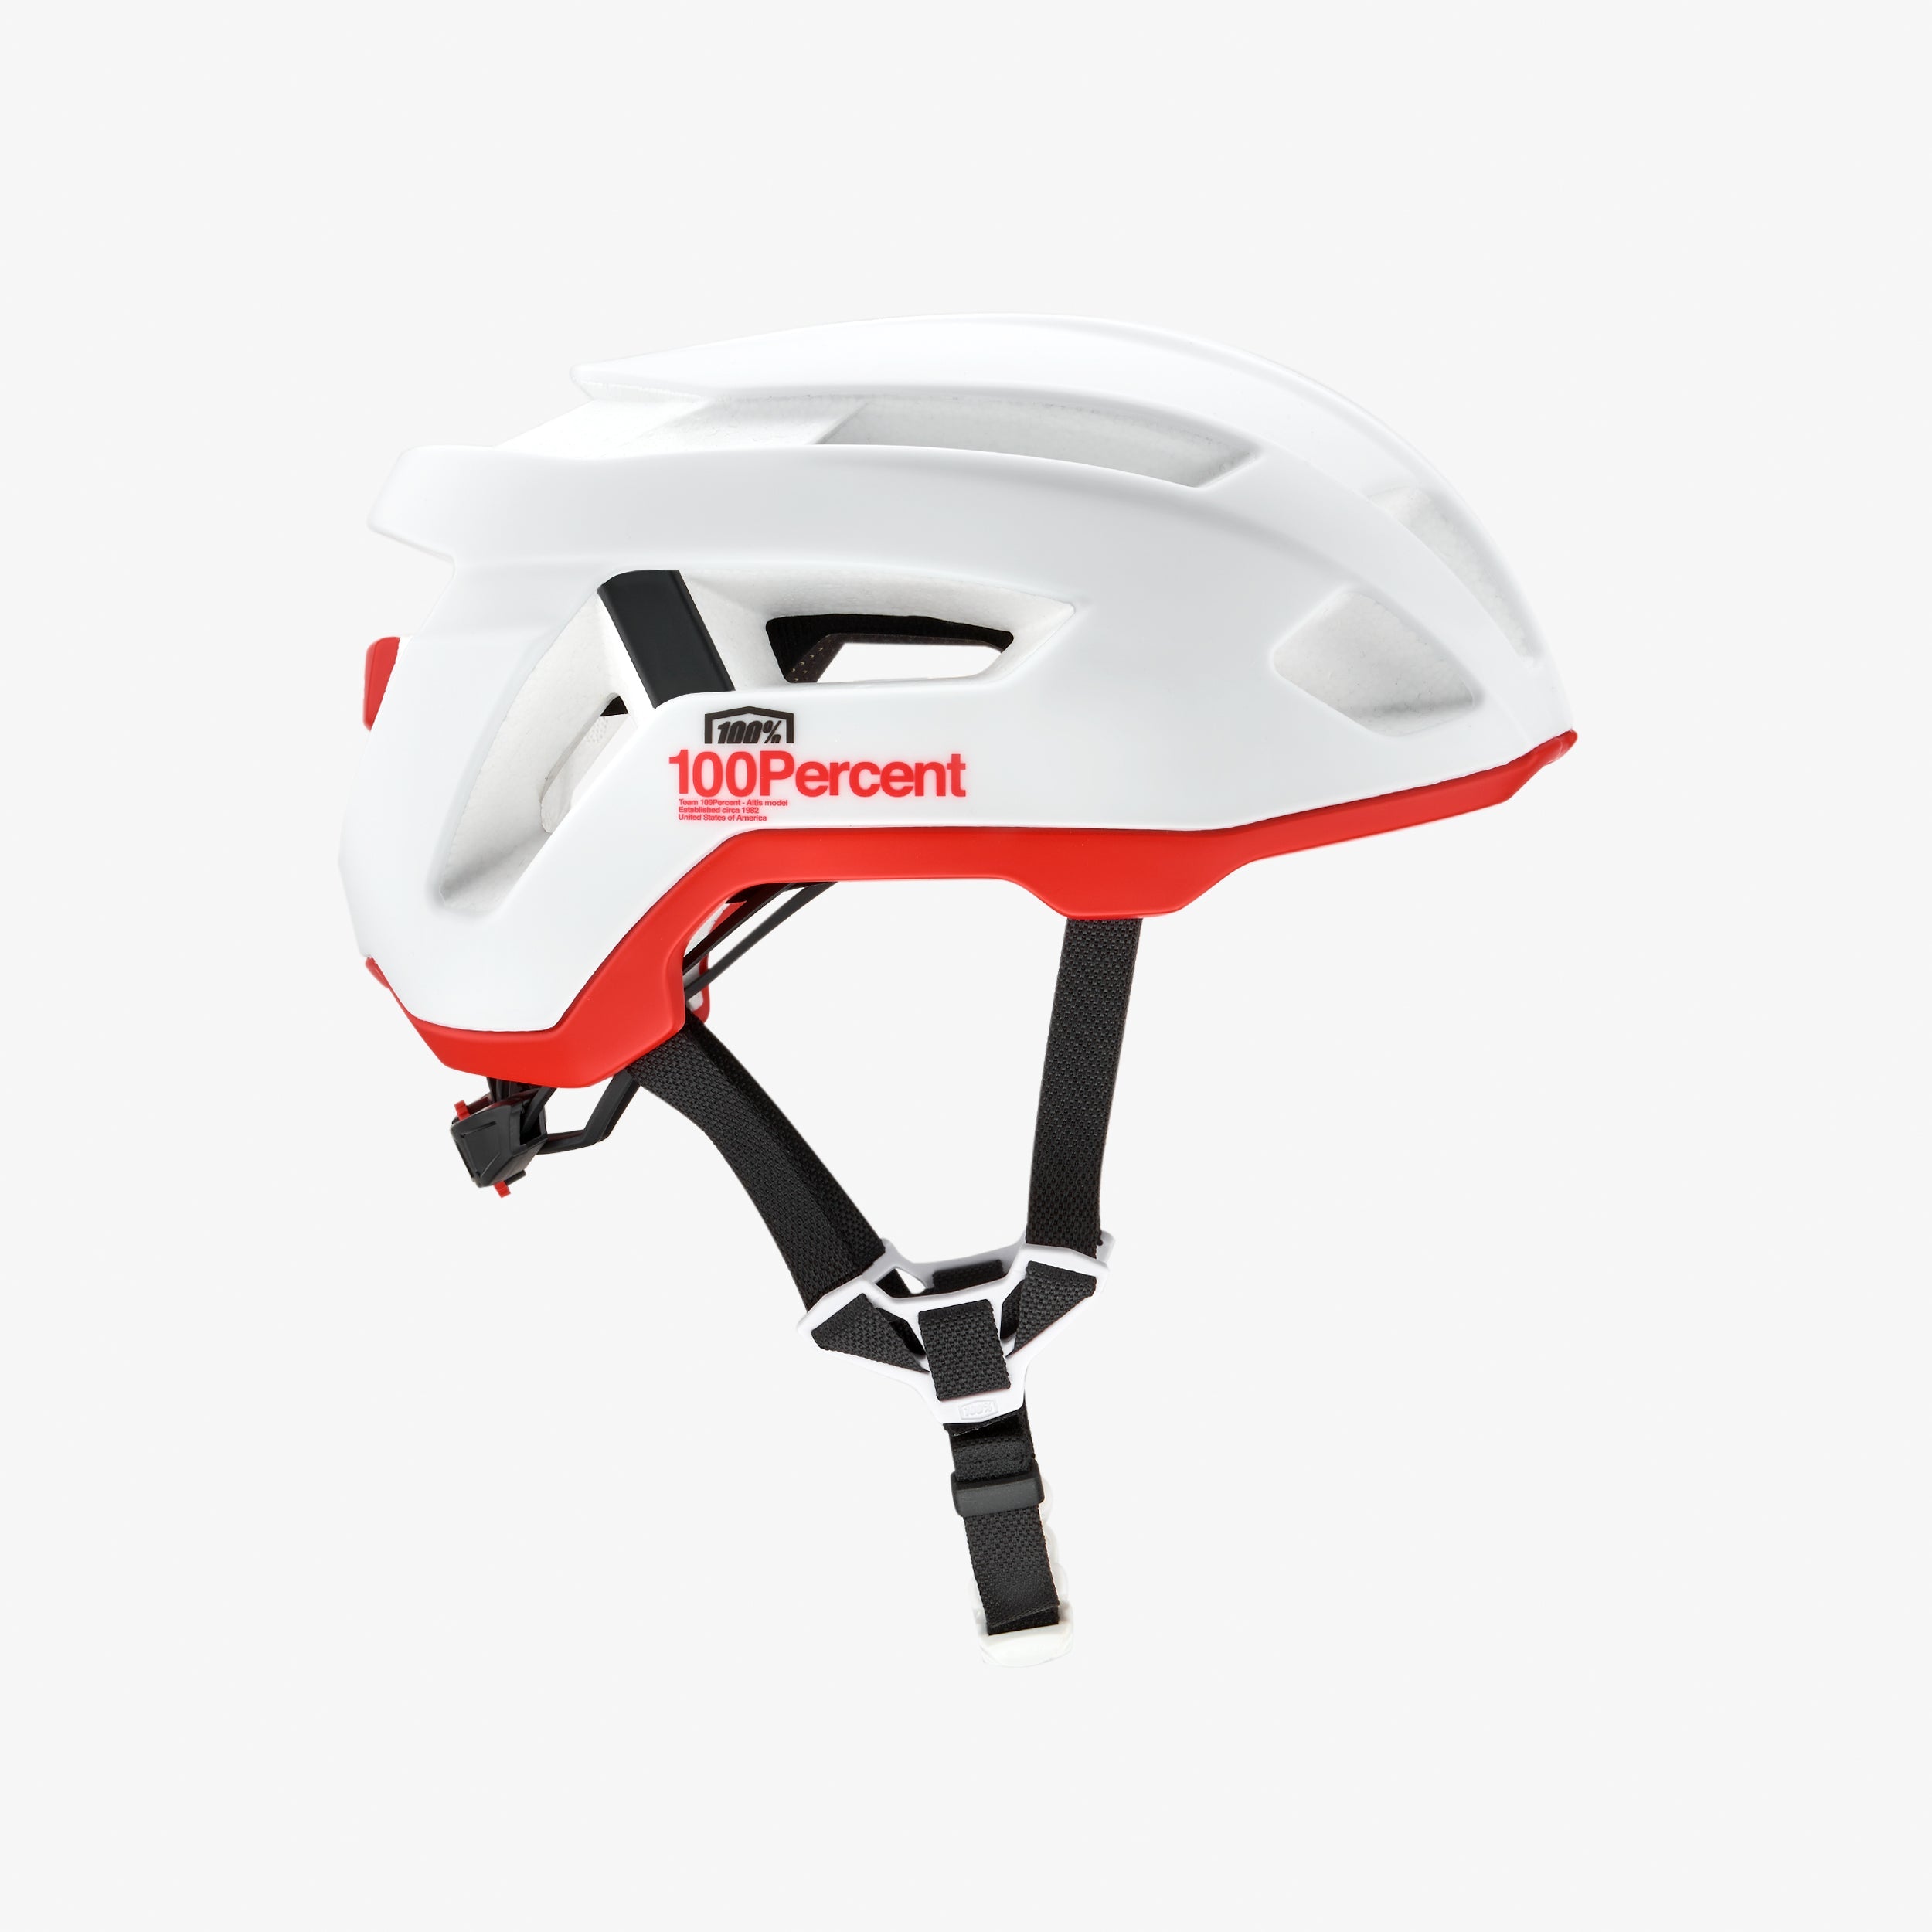 ALTIS Gravel Helmet White CPSC/CE